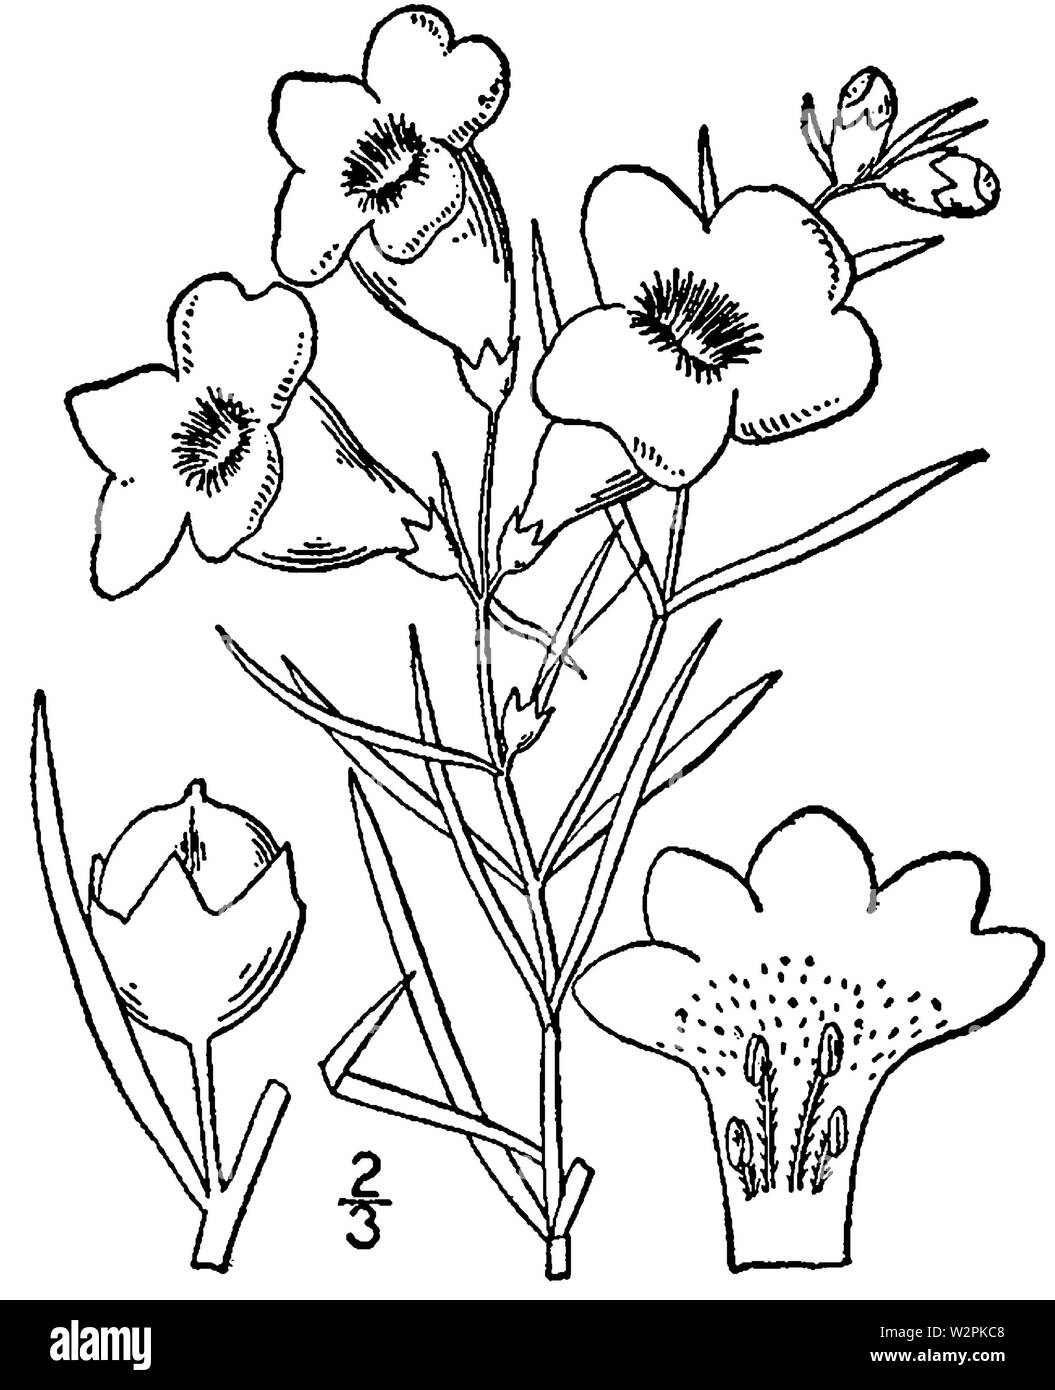 Agalinis purpurea Zeichnung Stockfoto